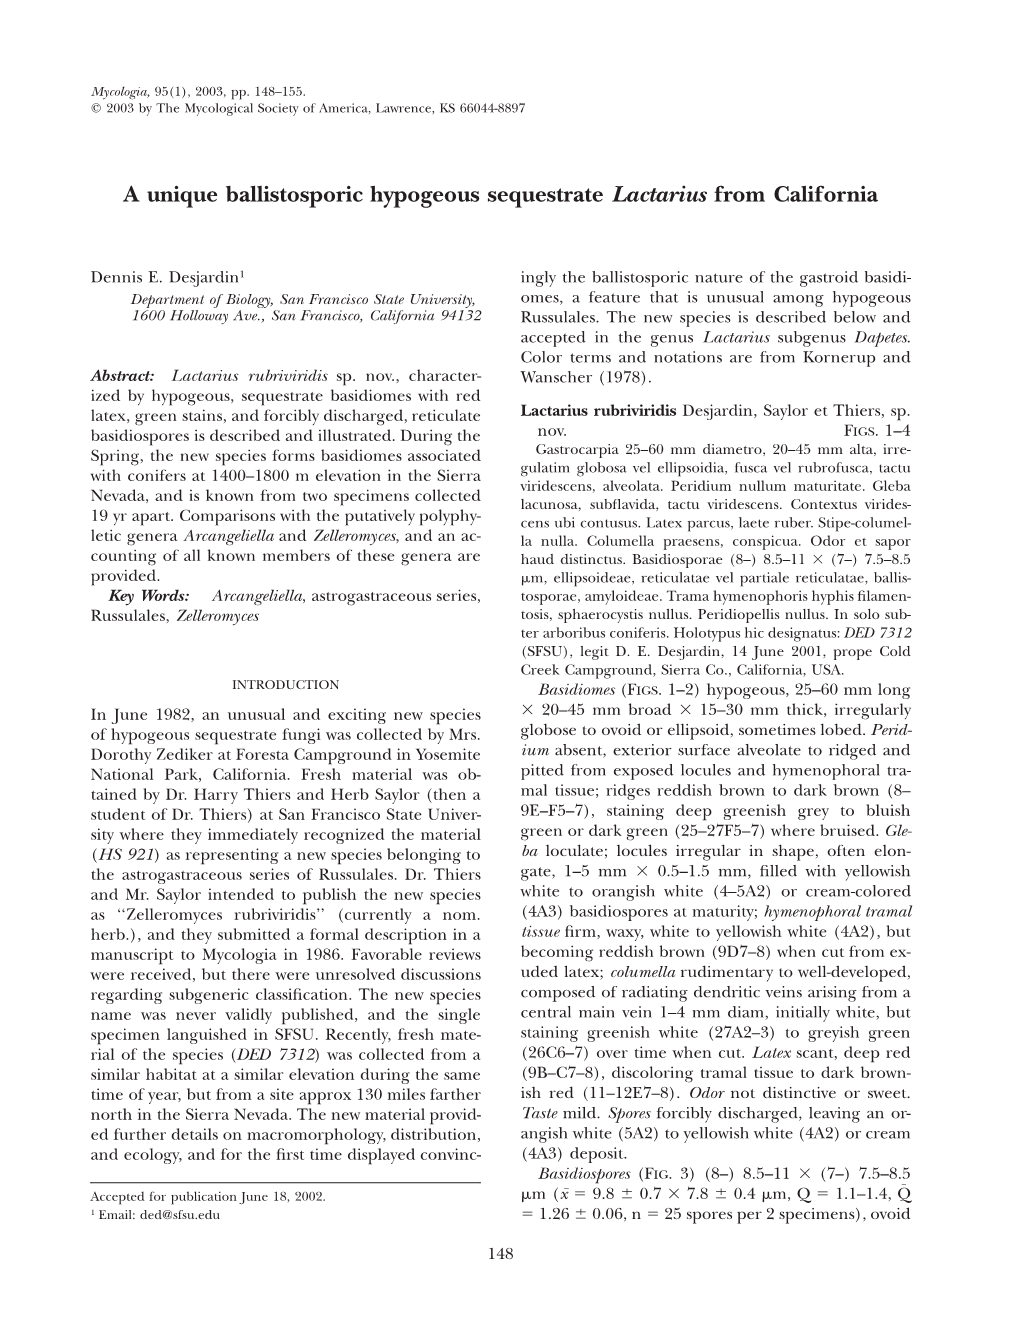 A Unique Ballistosporic Hypogeous Sequestrate Lactarius from California